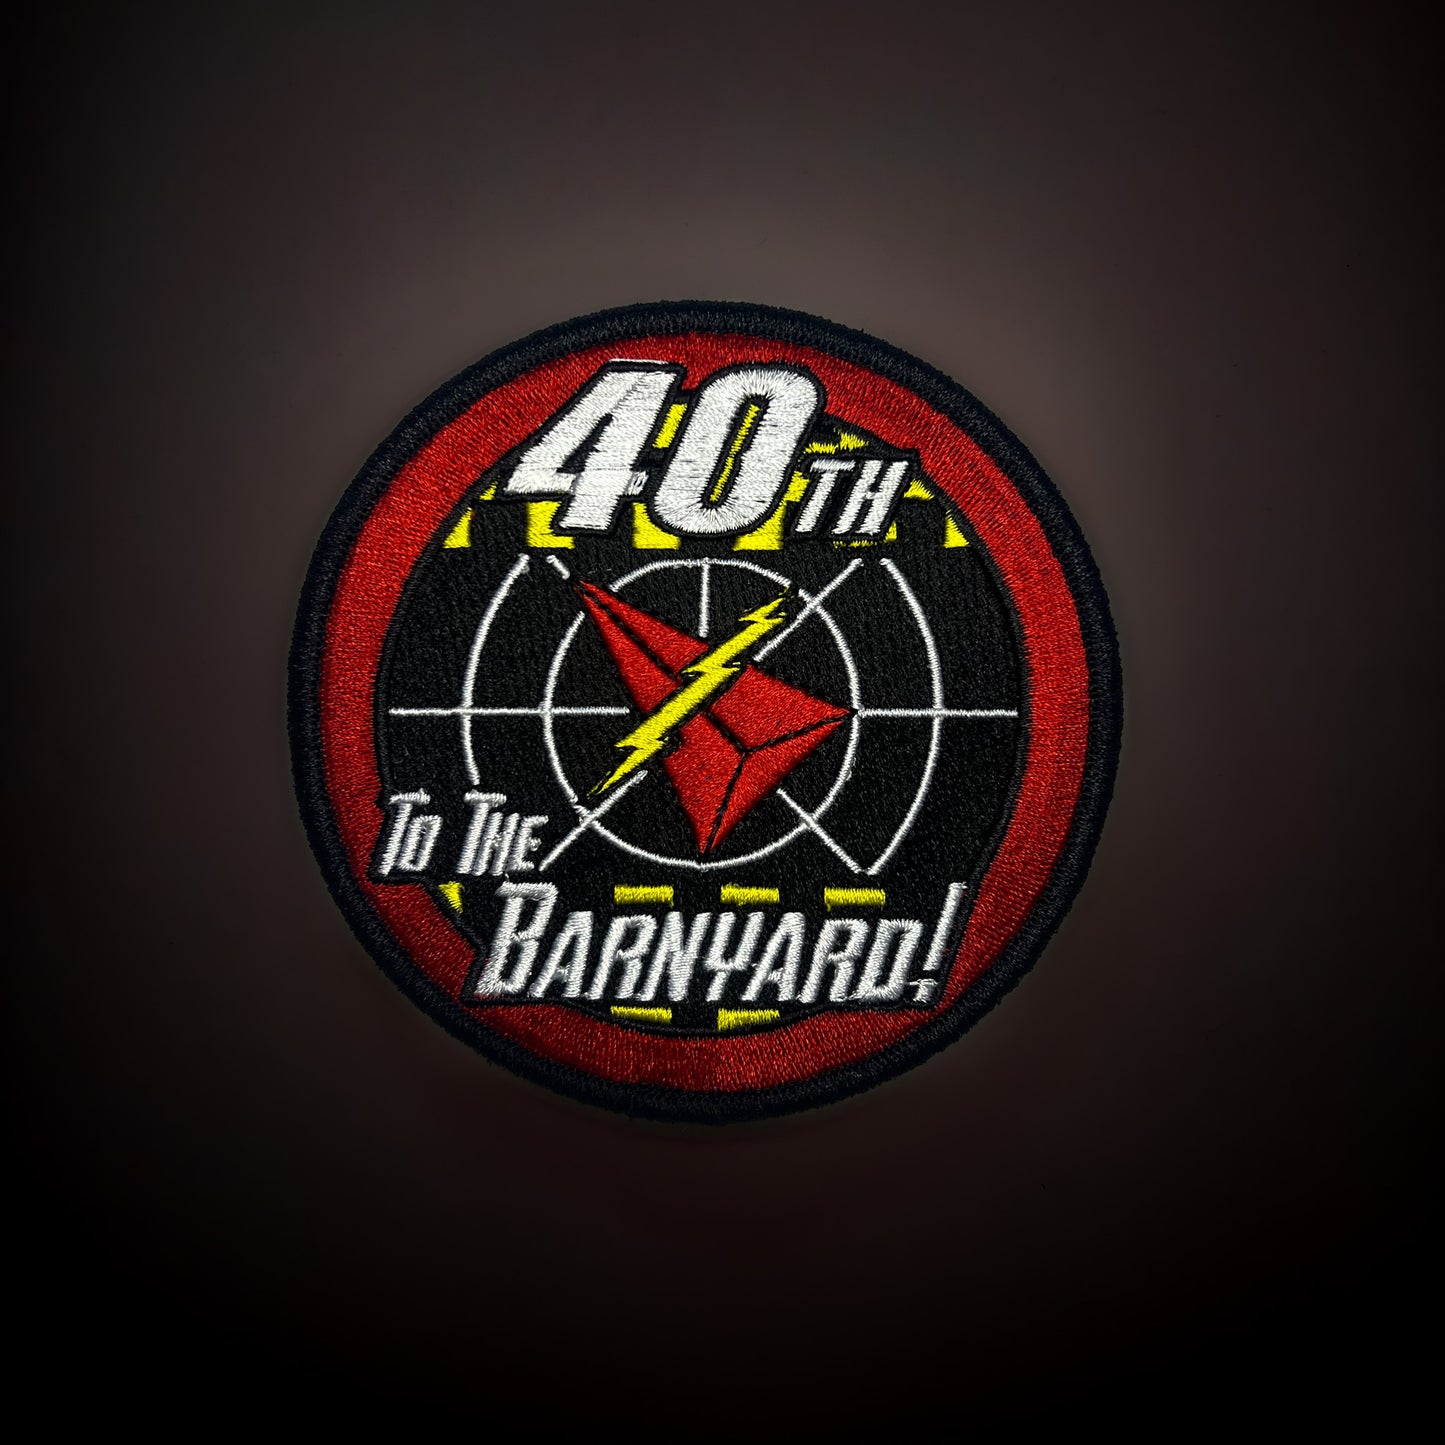 40th Anniversary "To The Barnyard"